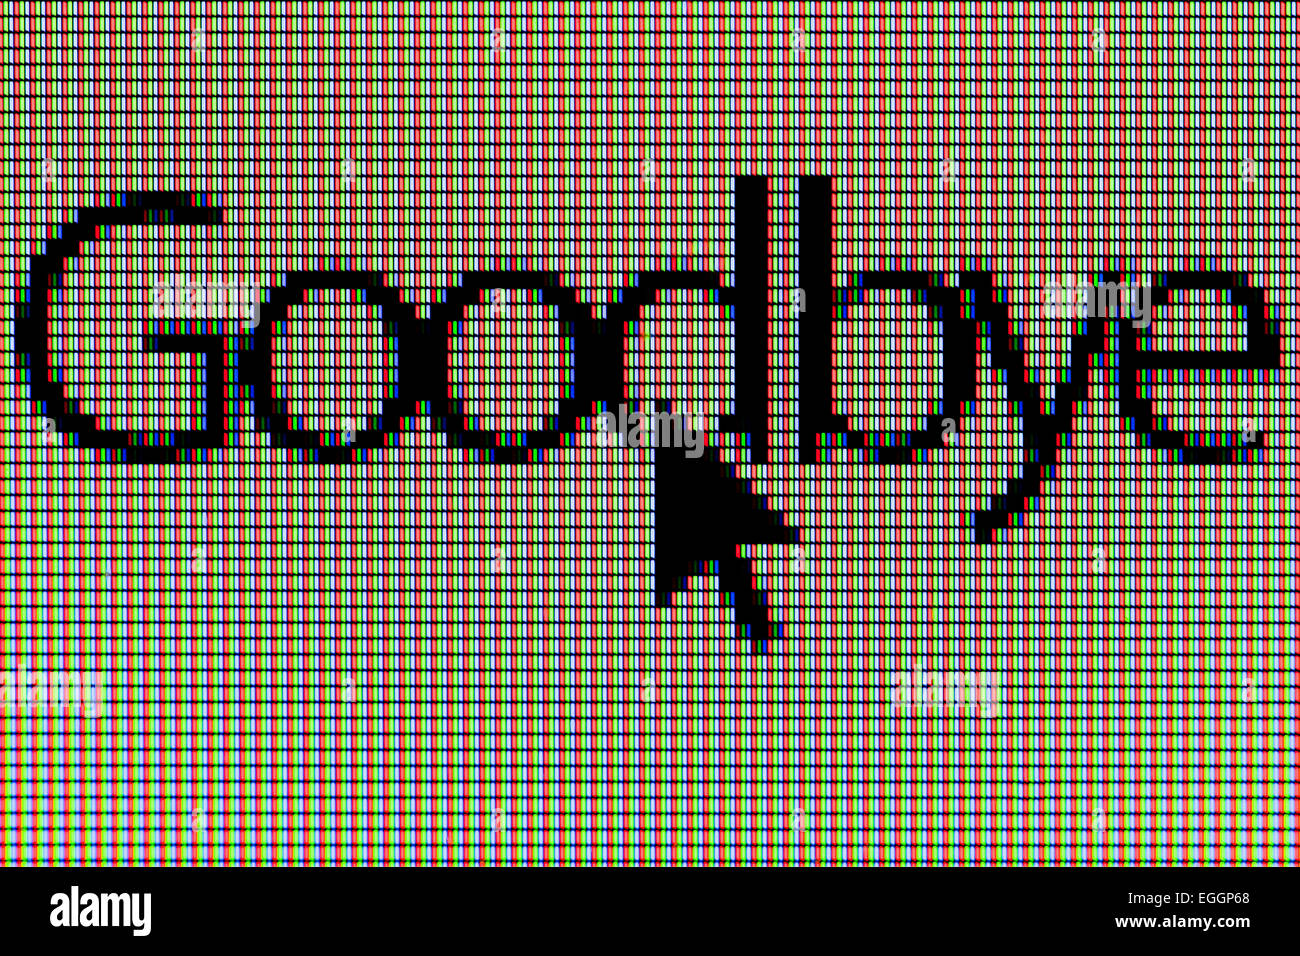 Primo piano della parola 'goodbye' sul display a cristalli liquidi dello schermo del computer Foto Stock